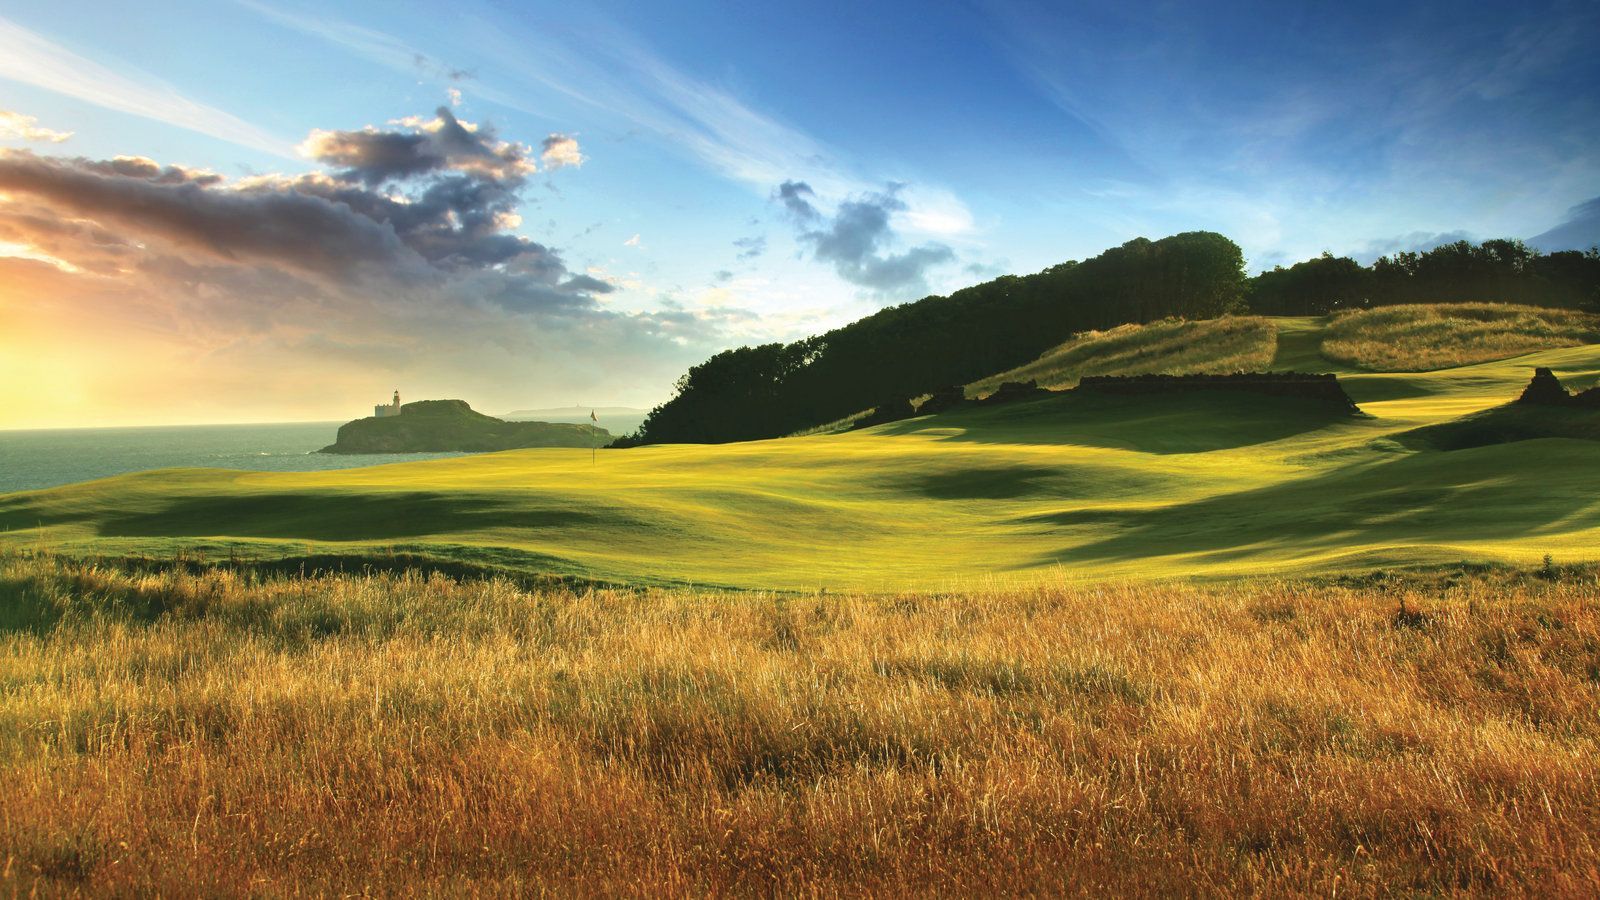 Gleneagles Golf Course in Scotland - Scotland All Inclusive Golf Trips